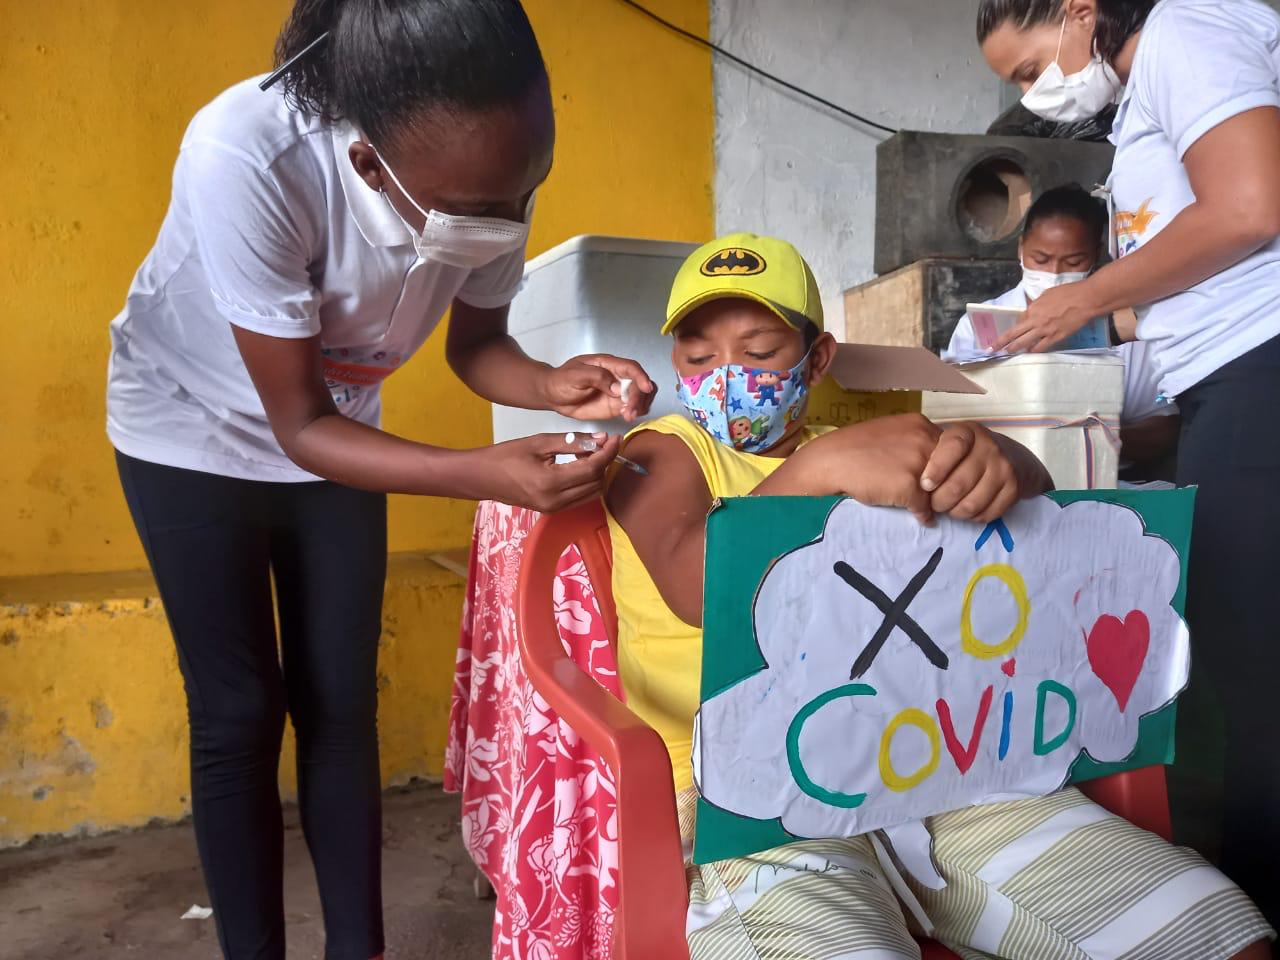 Prefeitura realiza mutirão de vacinação de crianças e adolescentes na ilha de Maré nesta sexta